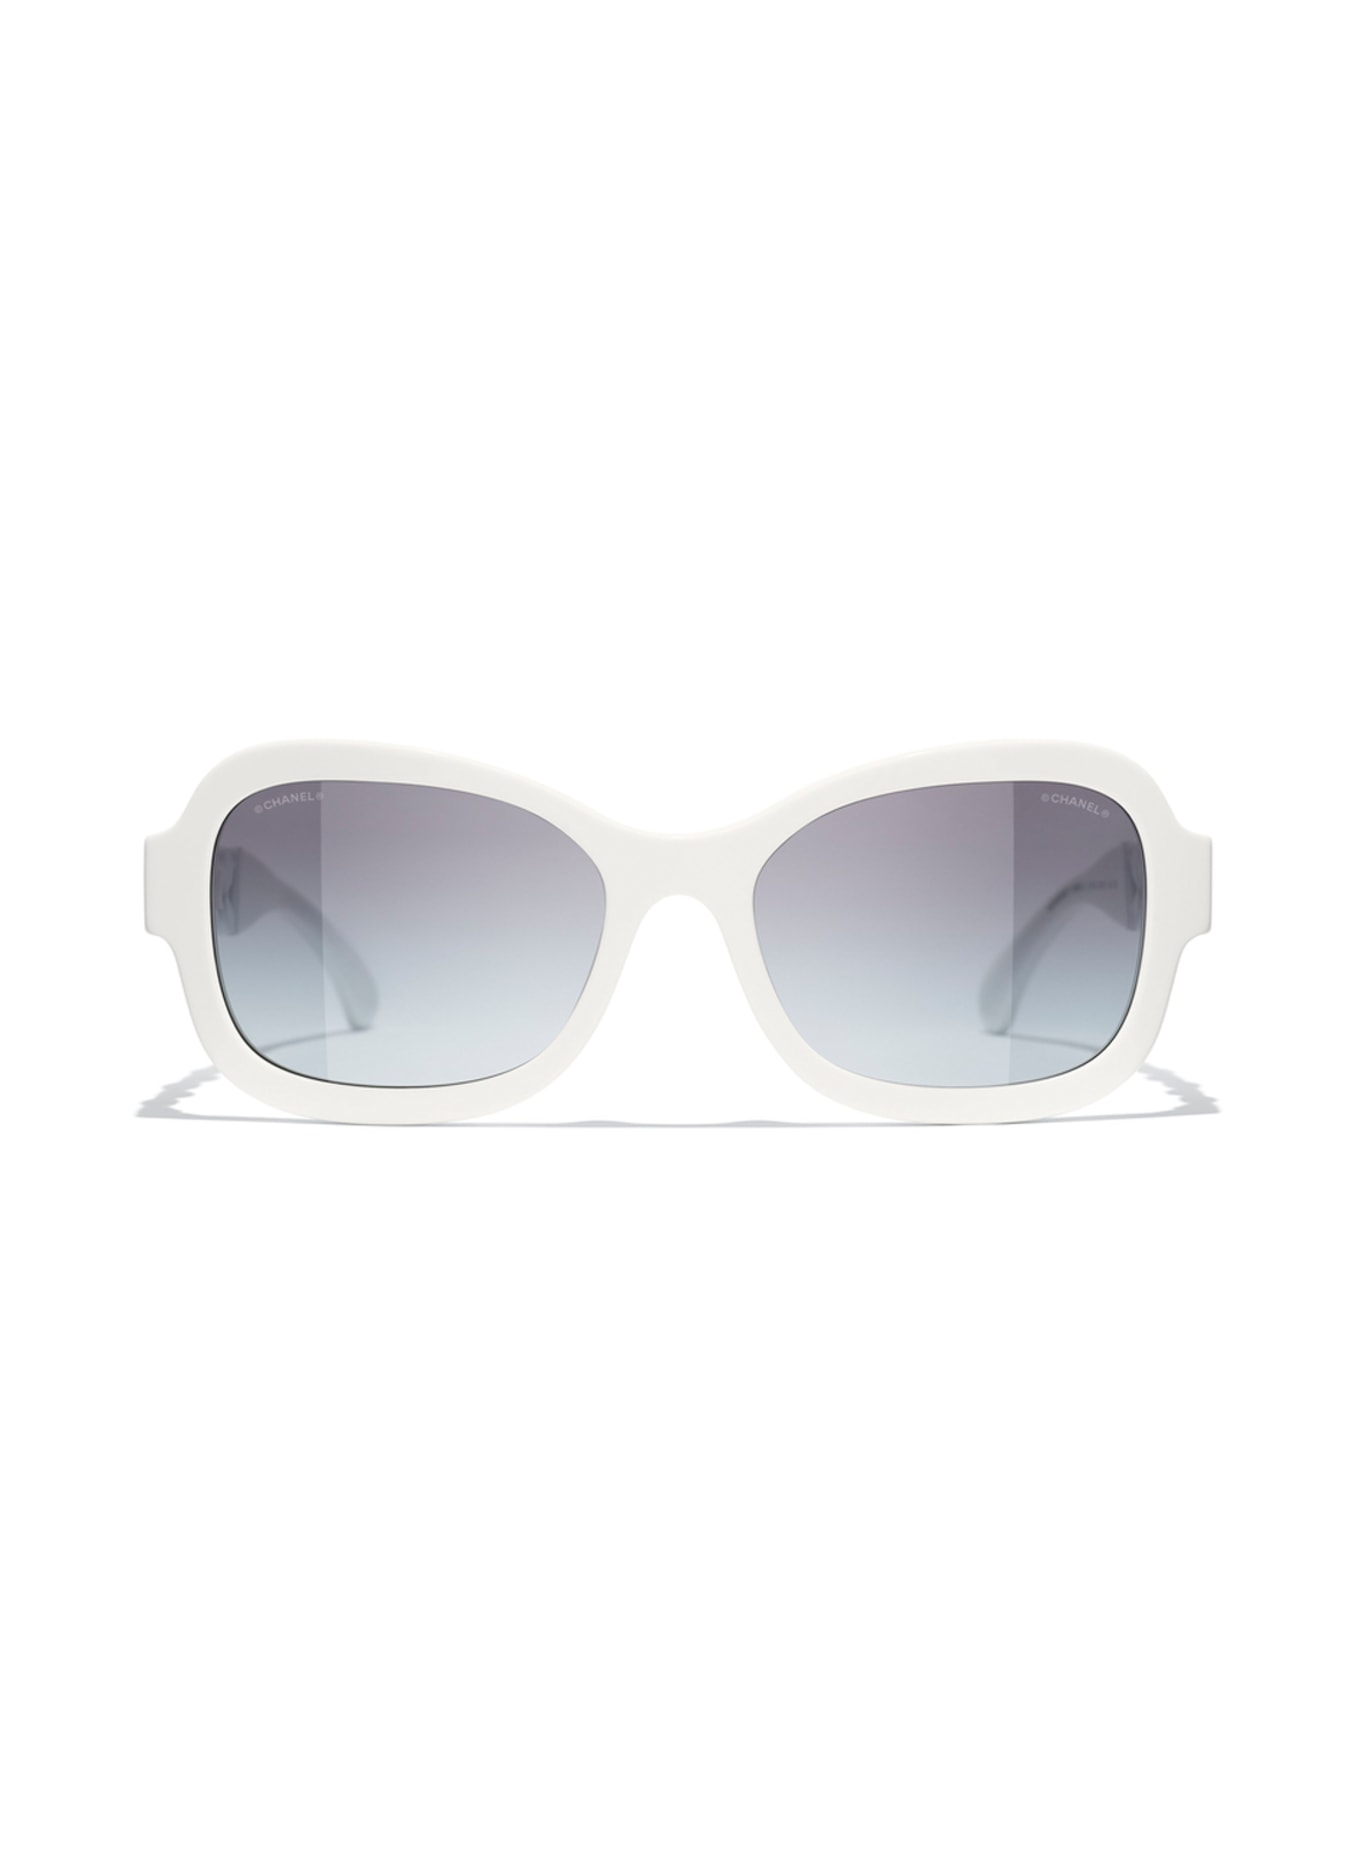 CHANEL Rechteckige Sonnenbrille in c716s6 - weiss/ grau verlauf